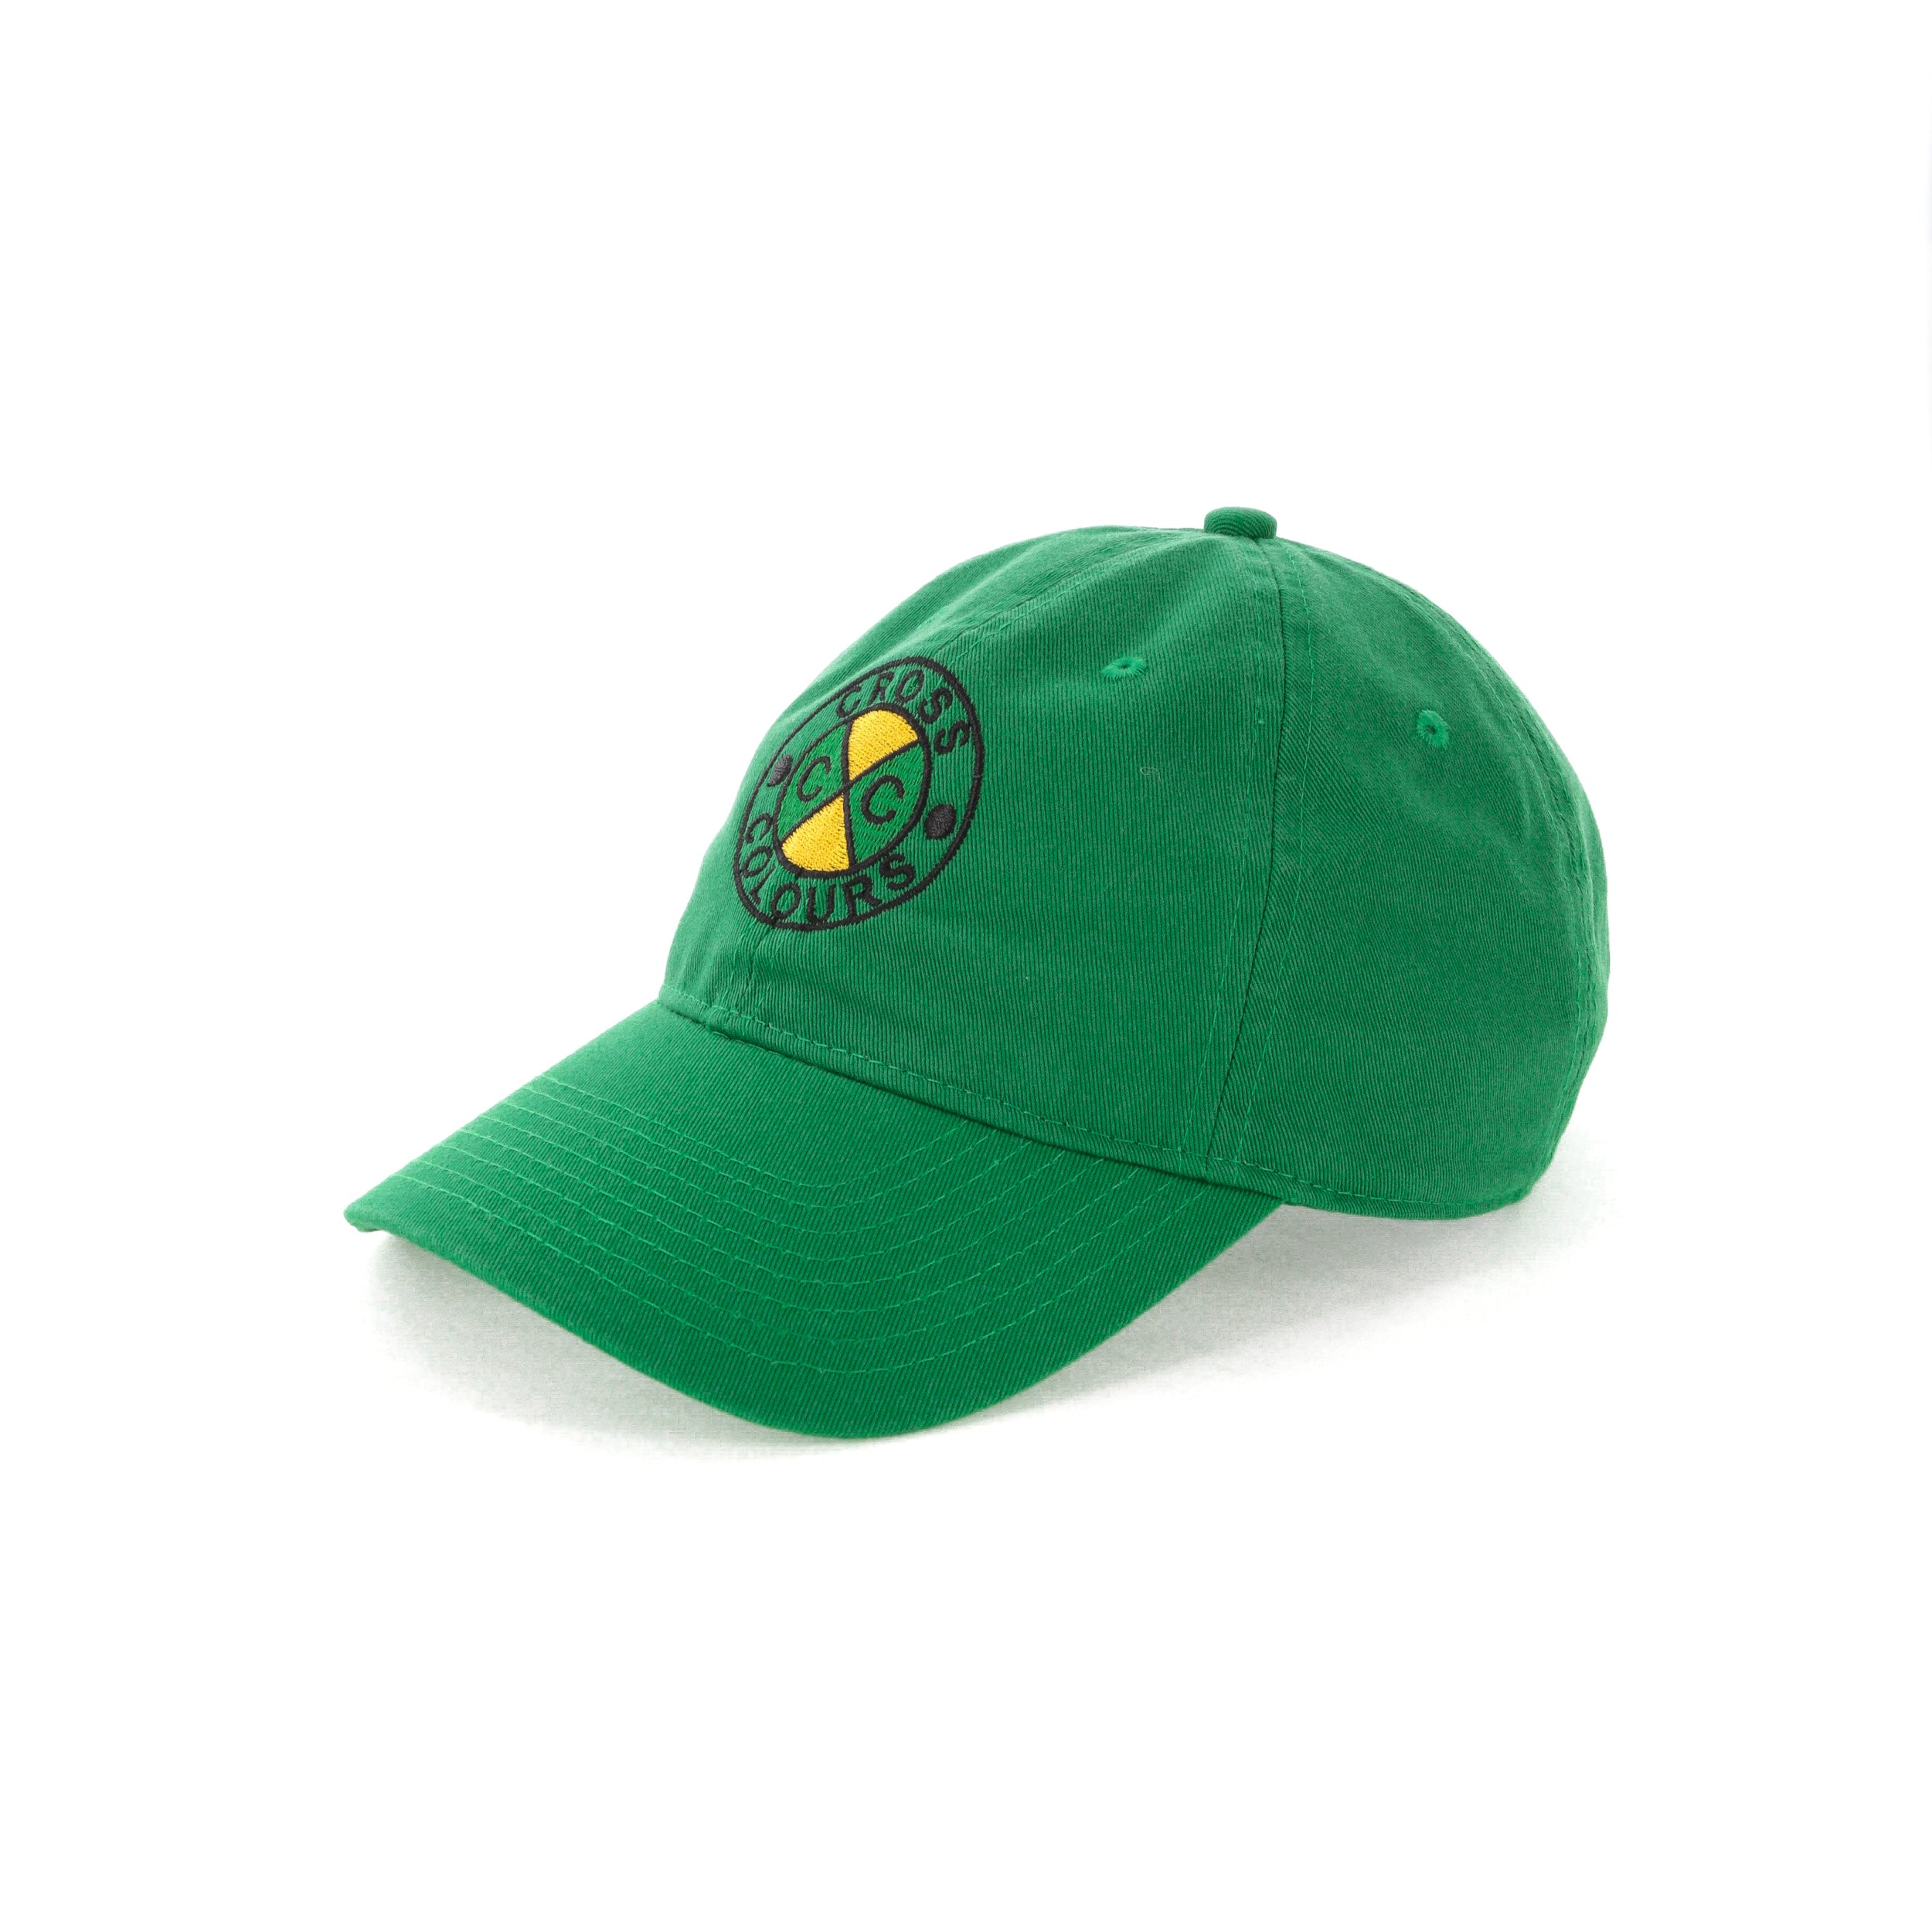 green la kings hat